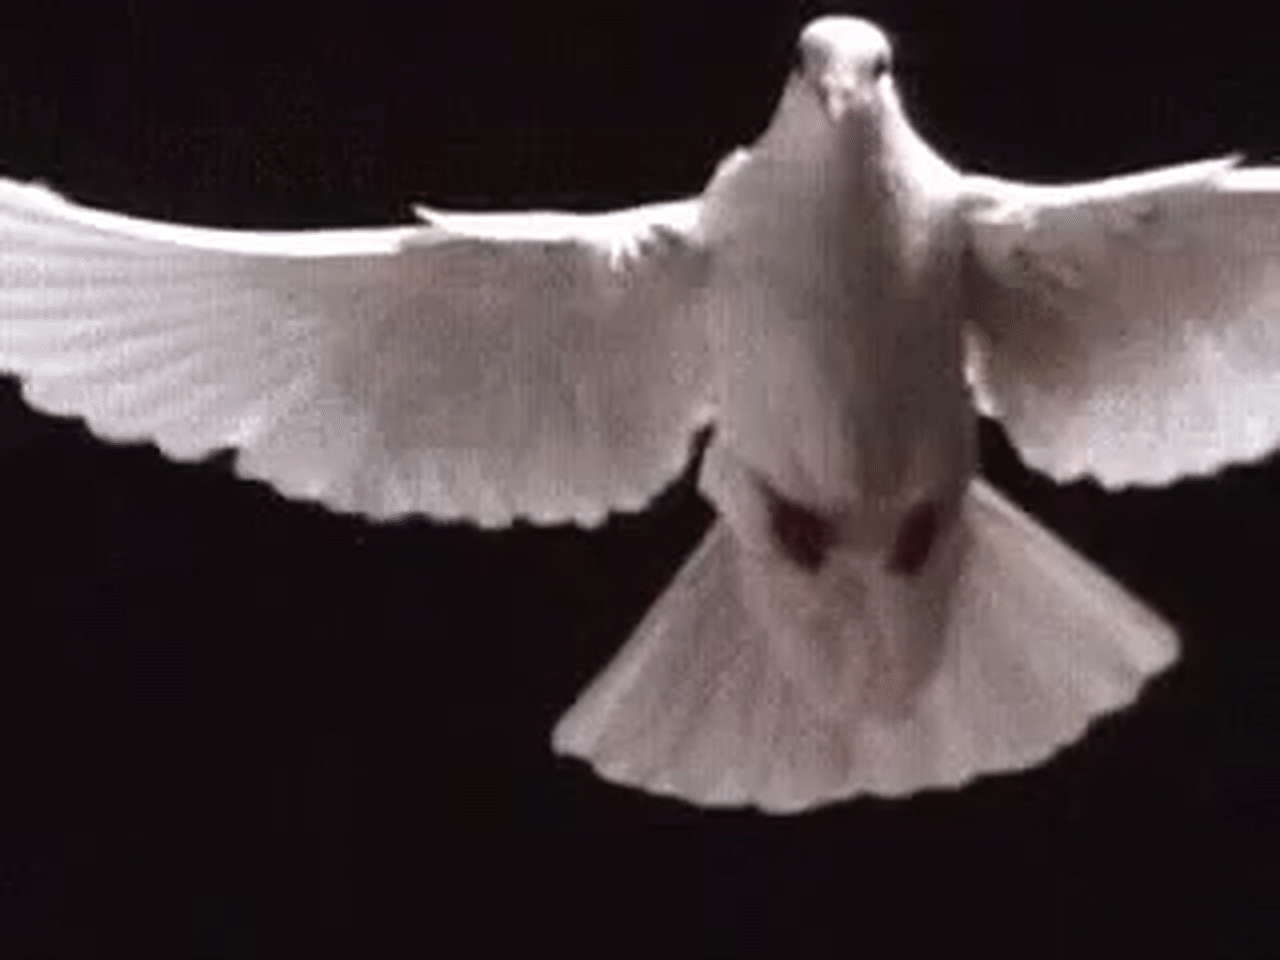 dove bird flying gif